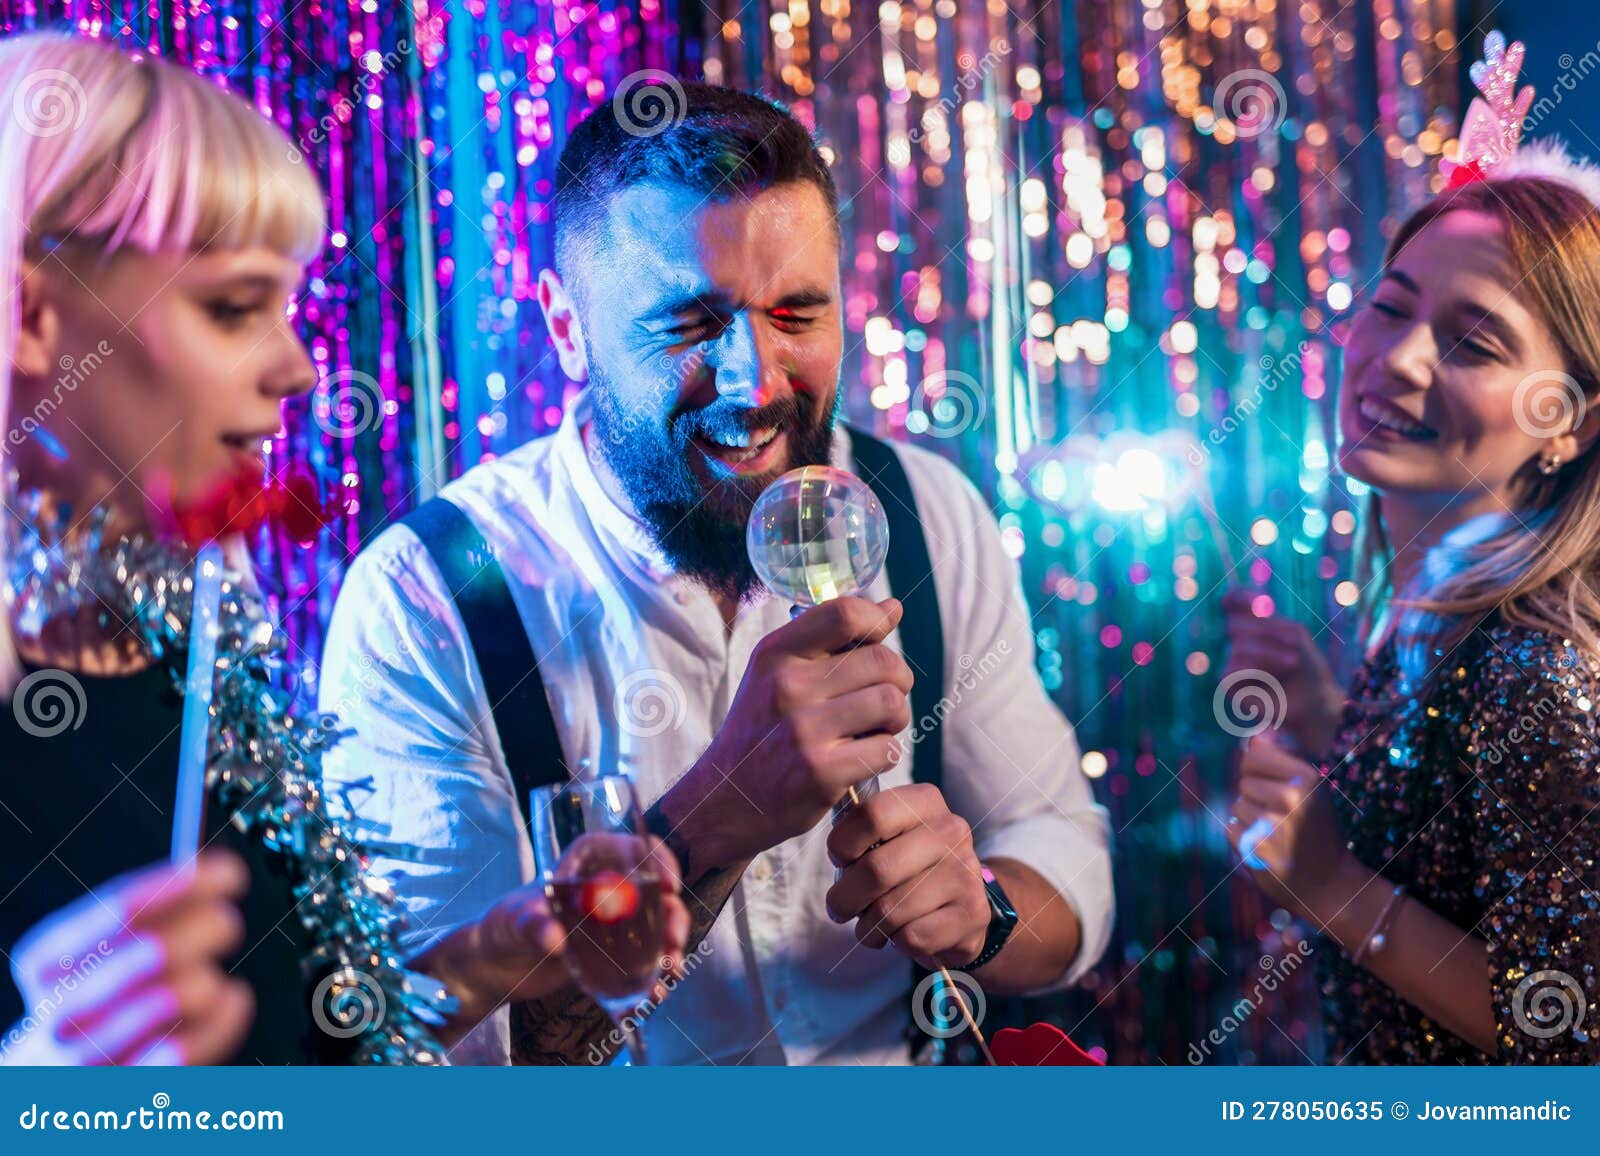 Group of People Dancing in the Club Singing Karaoke Stock Image - Image ...